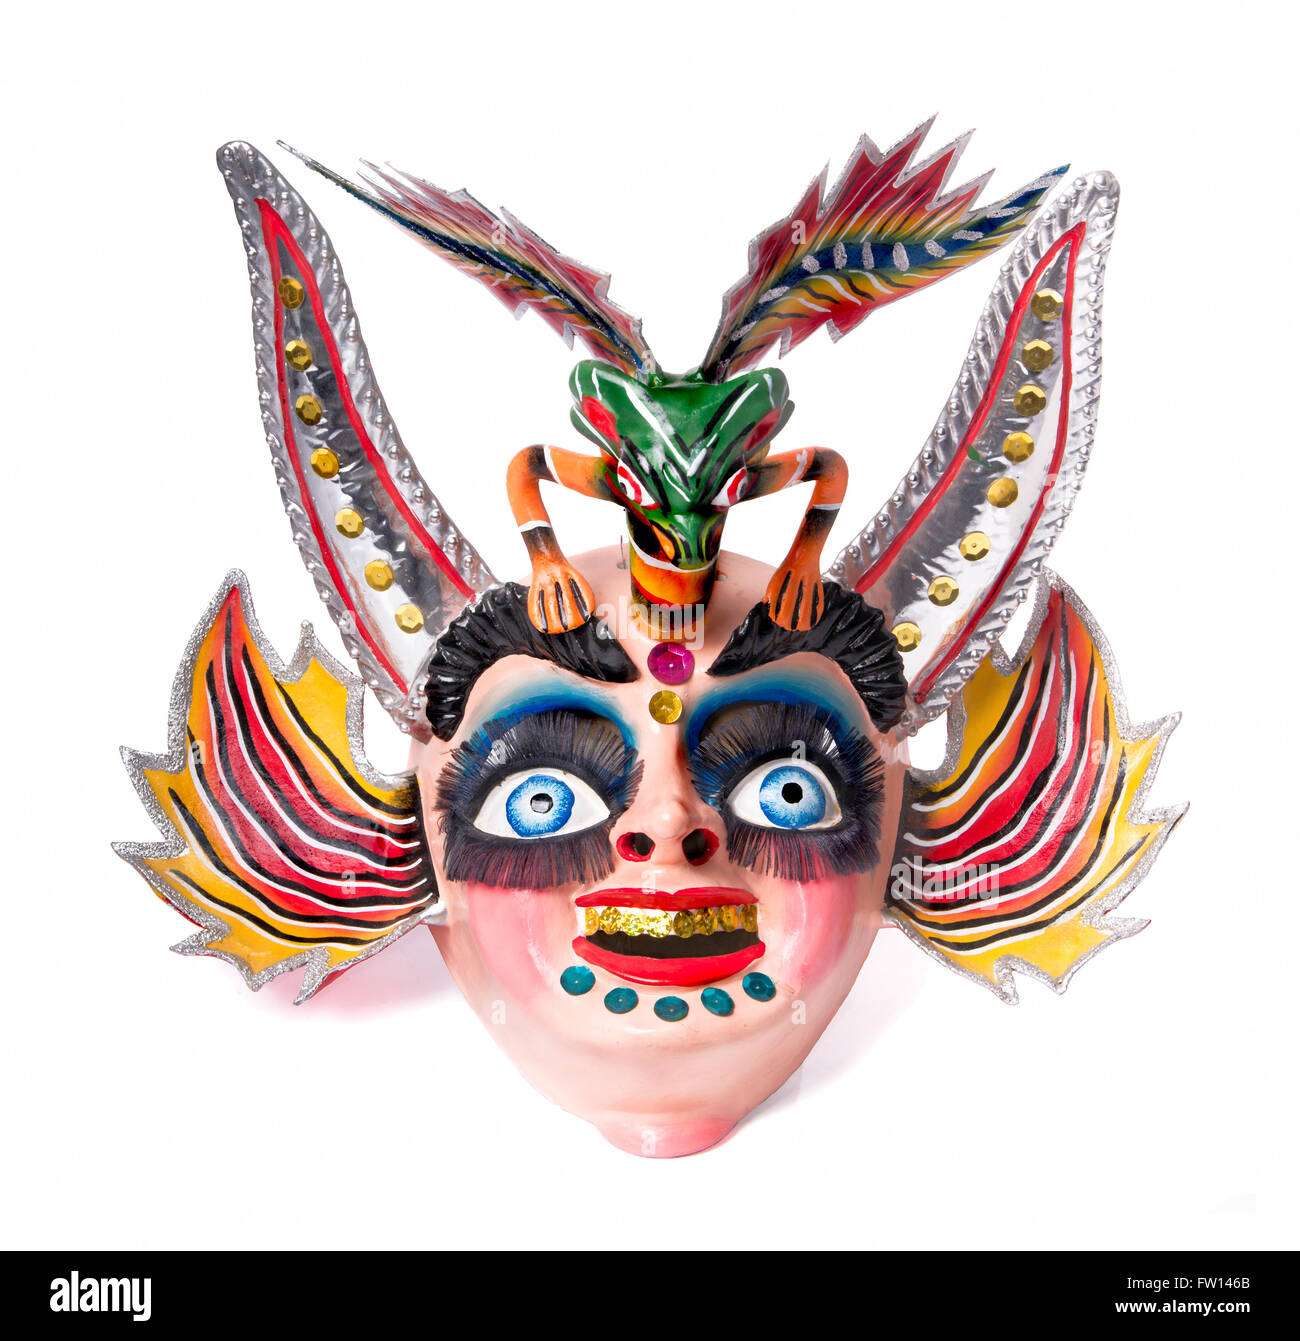 Masque de divinité maléfique bolivien, représente l'amant de ce mal, il est utilisé dans le cadre d'une suite dans une danse folklorique appelé "MORENADA" Banque D'Images